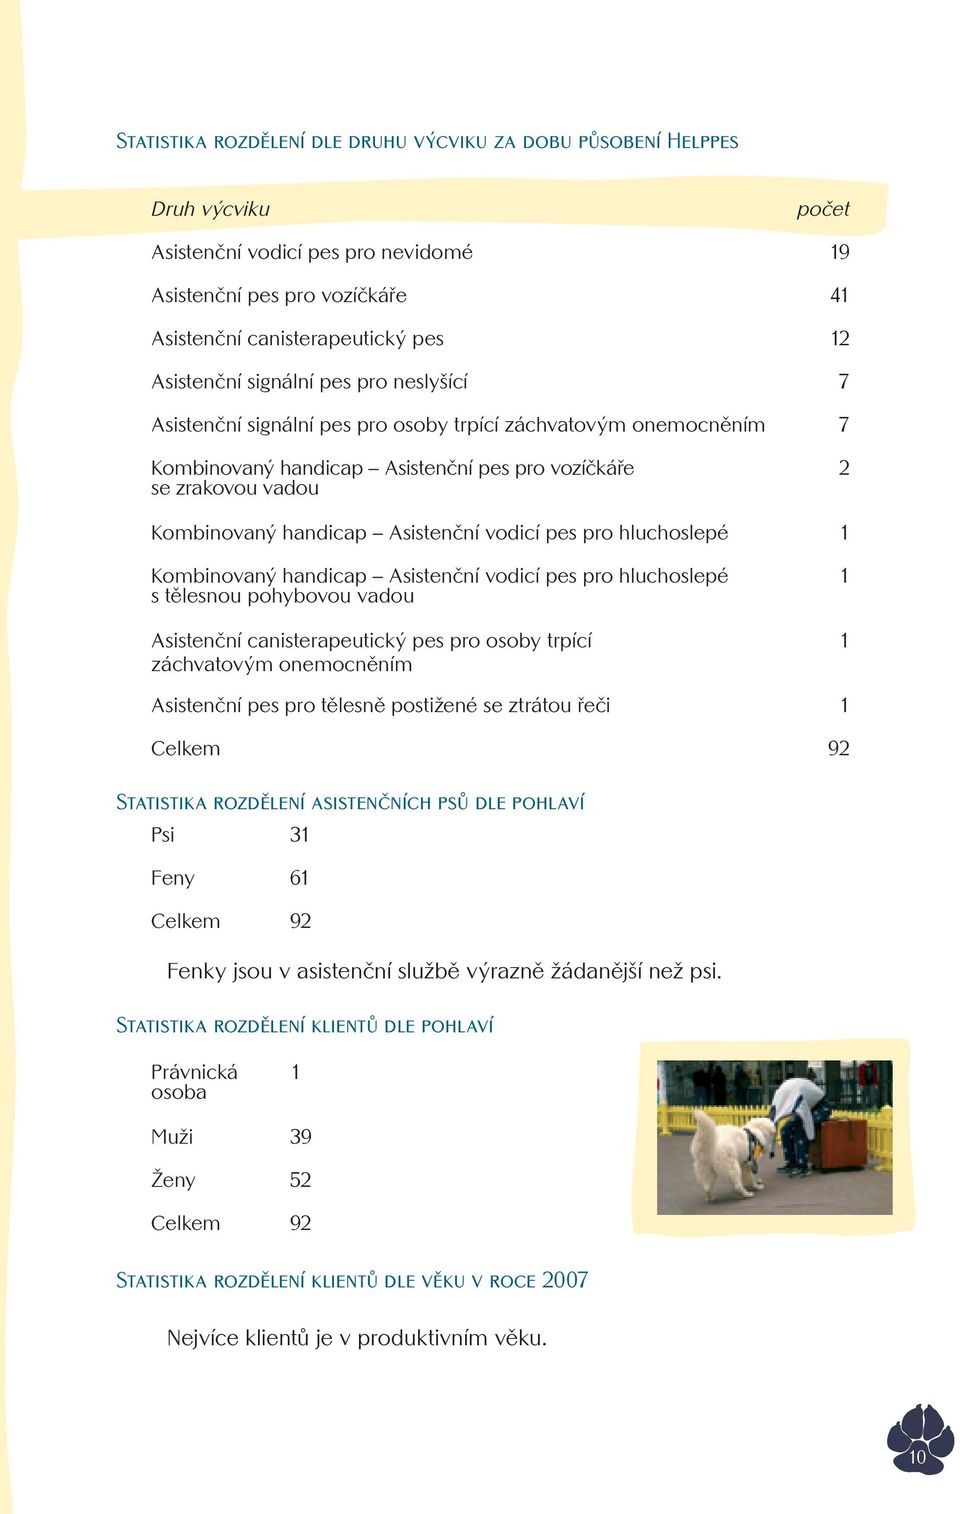 vodicí pes pro hluchoslepé 1 Kombinovaný handicap Asistenční vodicí pes pro hluchoslepé s tělesnou pohybovou vadou Asistenční canisterapeutický pes pro osoby trpící záchvatovým onemocněním 1 1